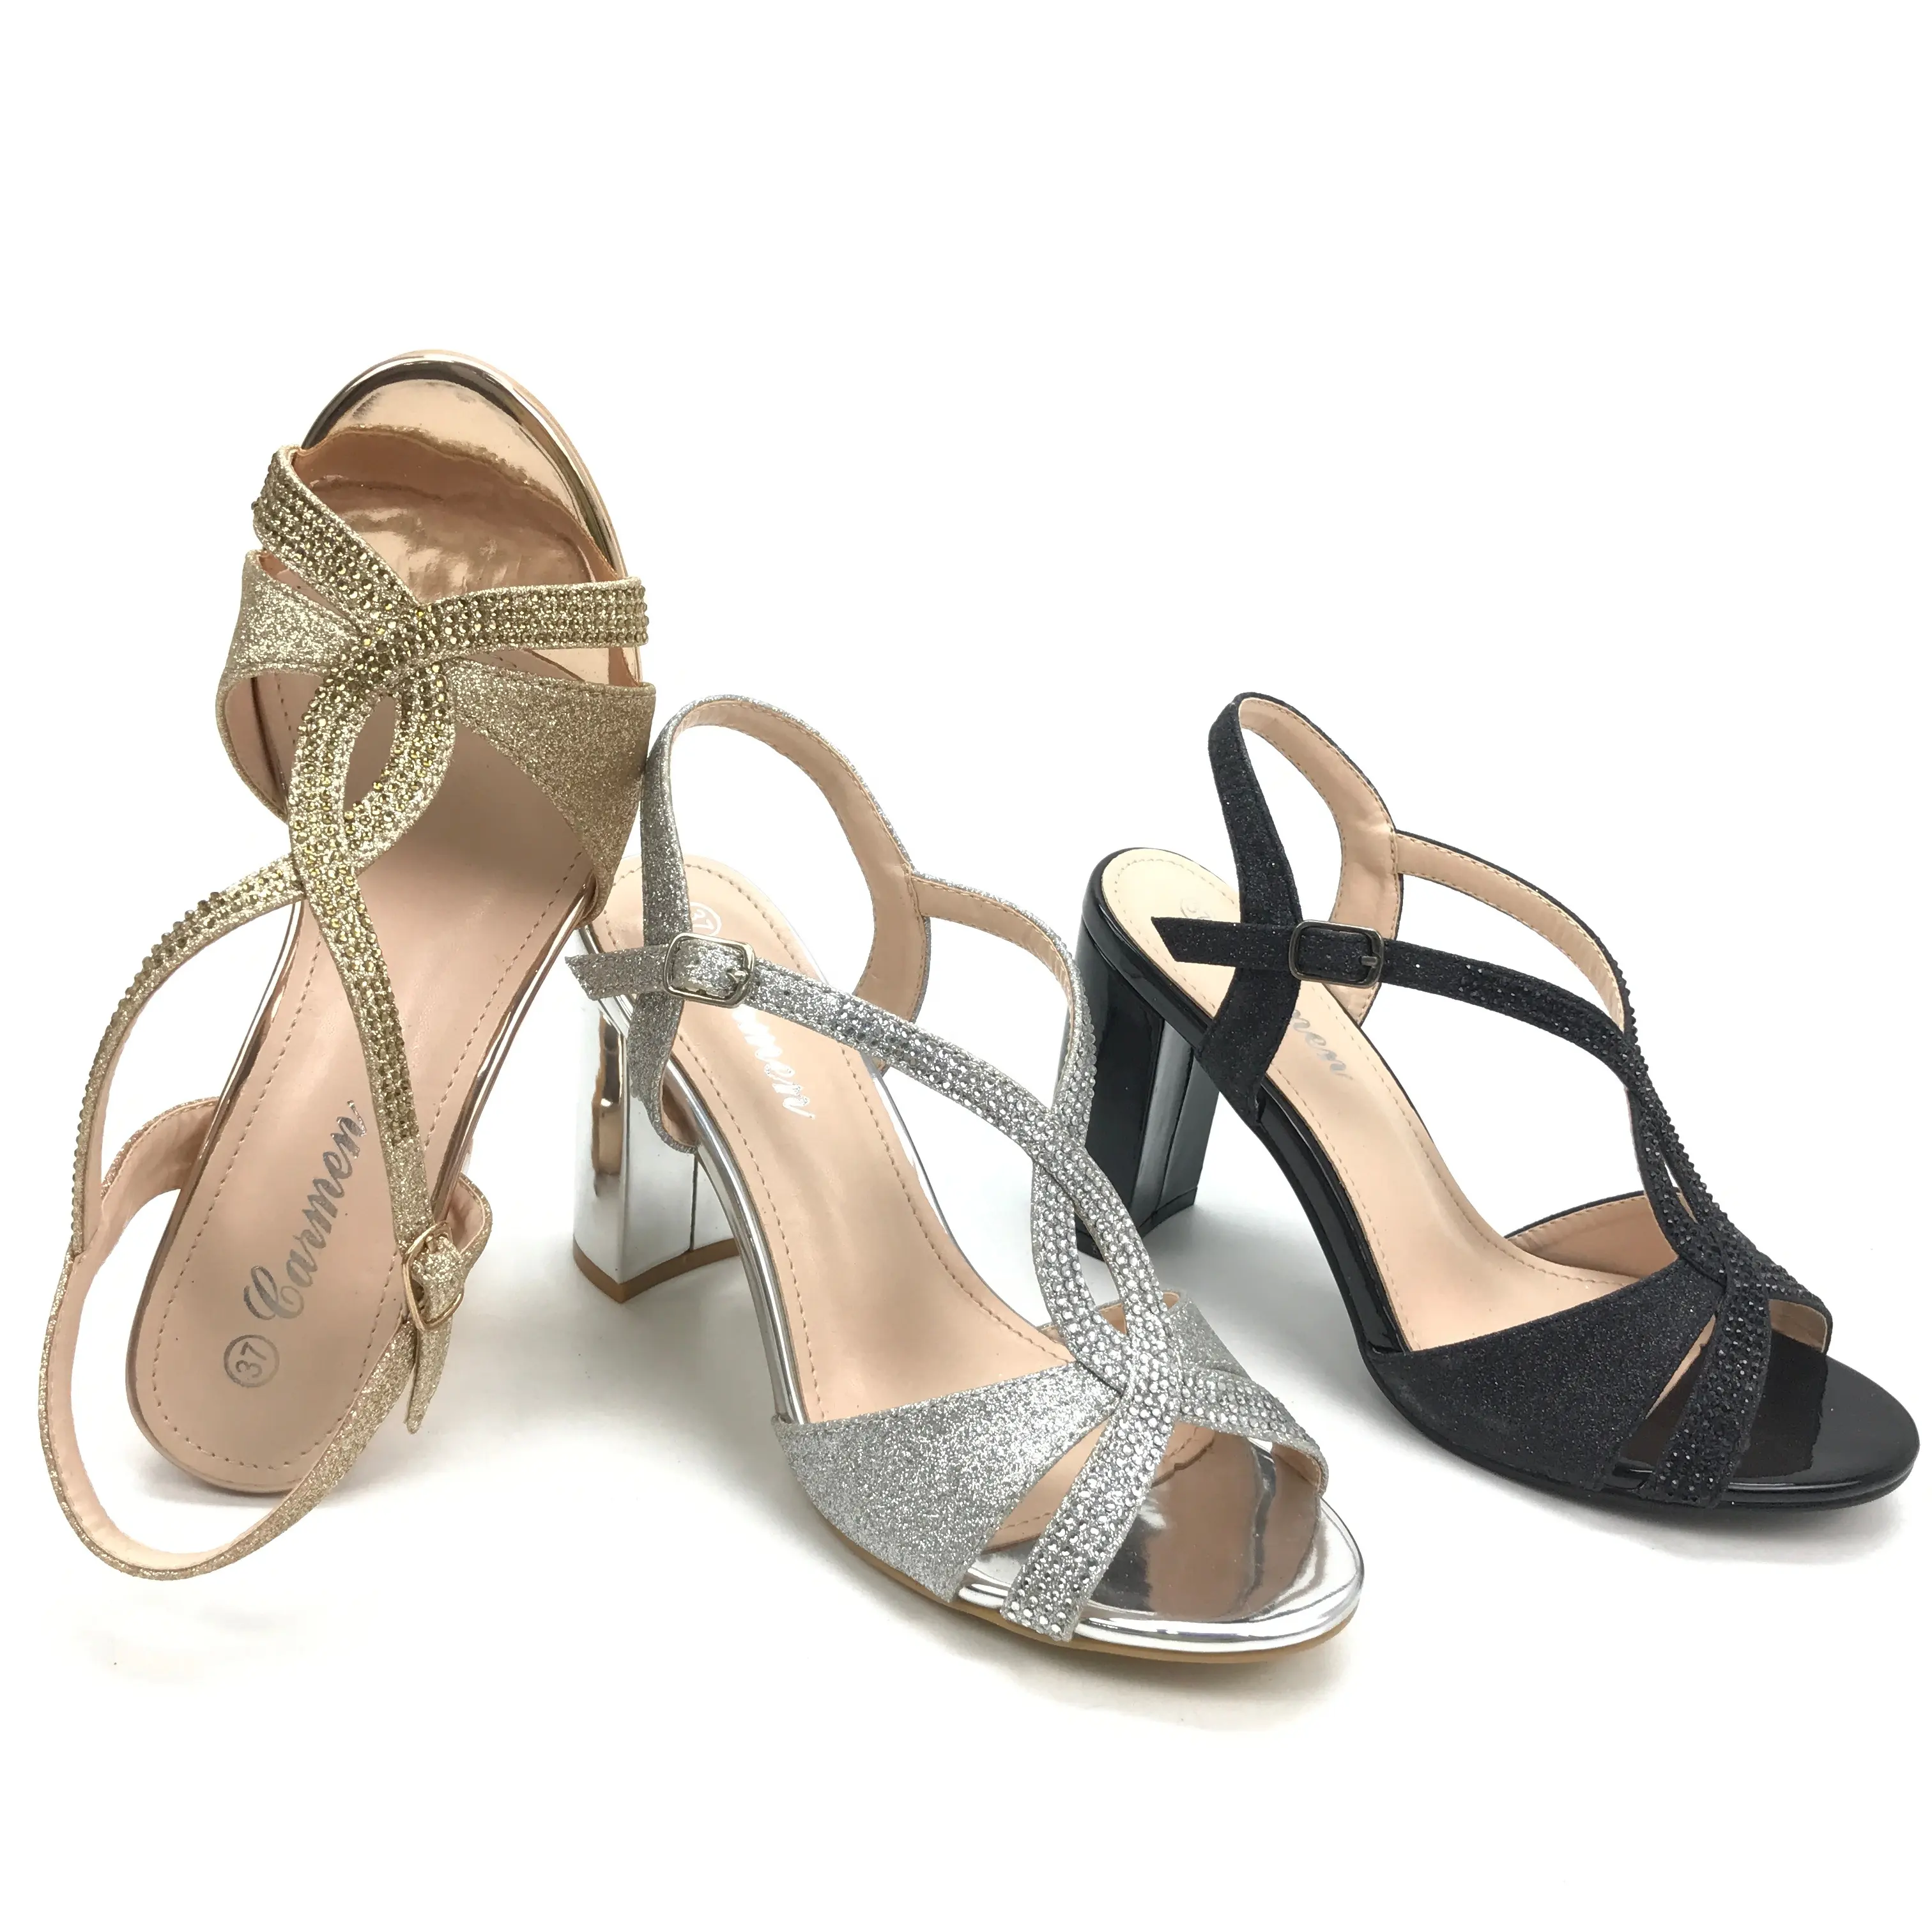 Ladies Open Toe Sandals Diamonds Block Heels Casual Dress Shoes Comfortable Heels for Women